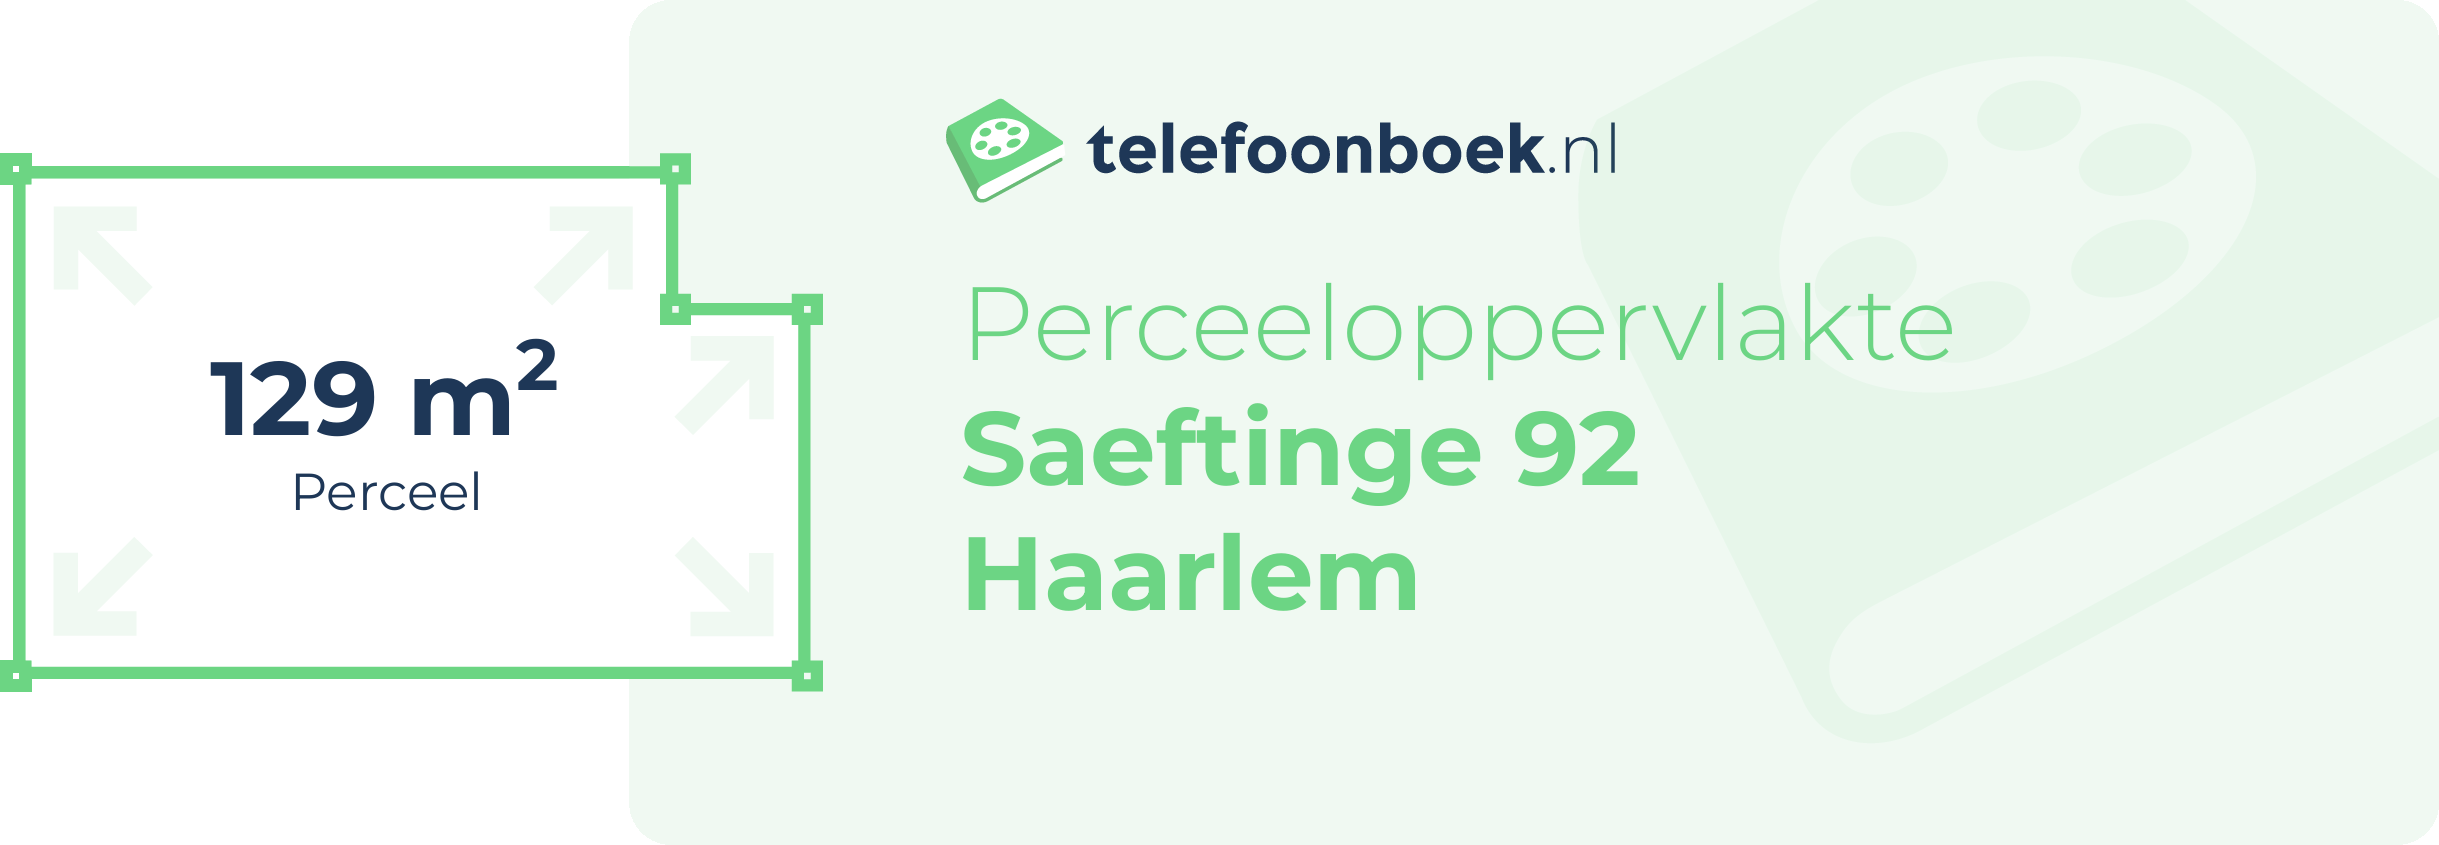 Perceeloppervlakte Saeftinge 92 Haarlem